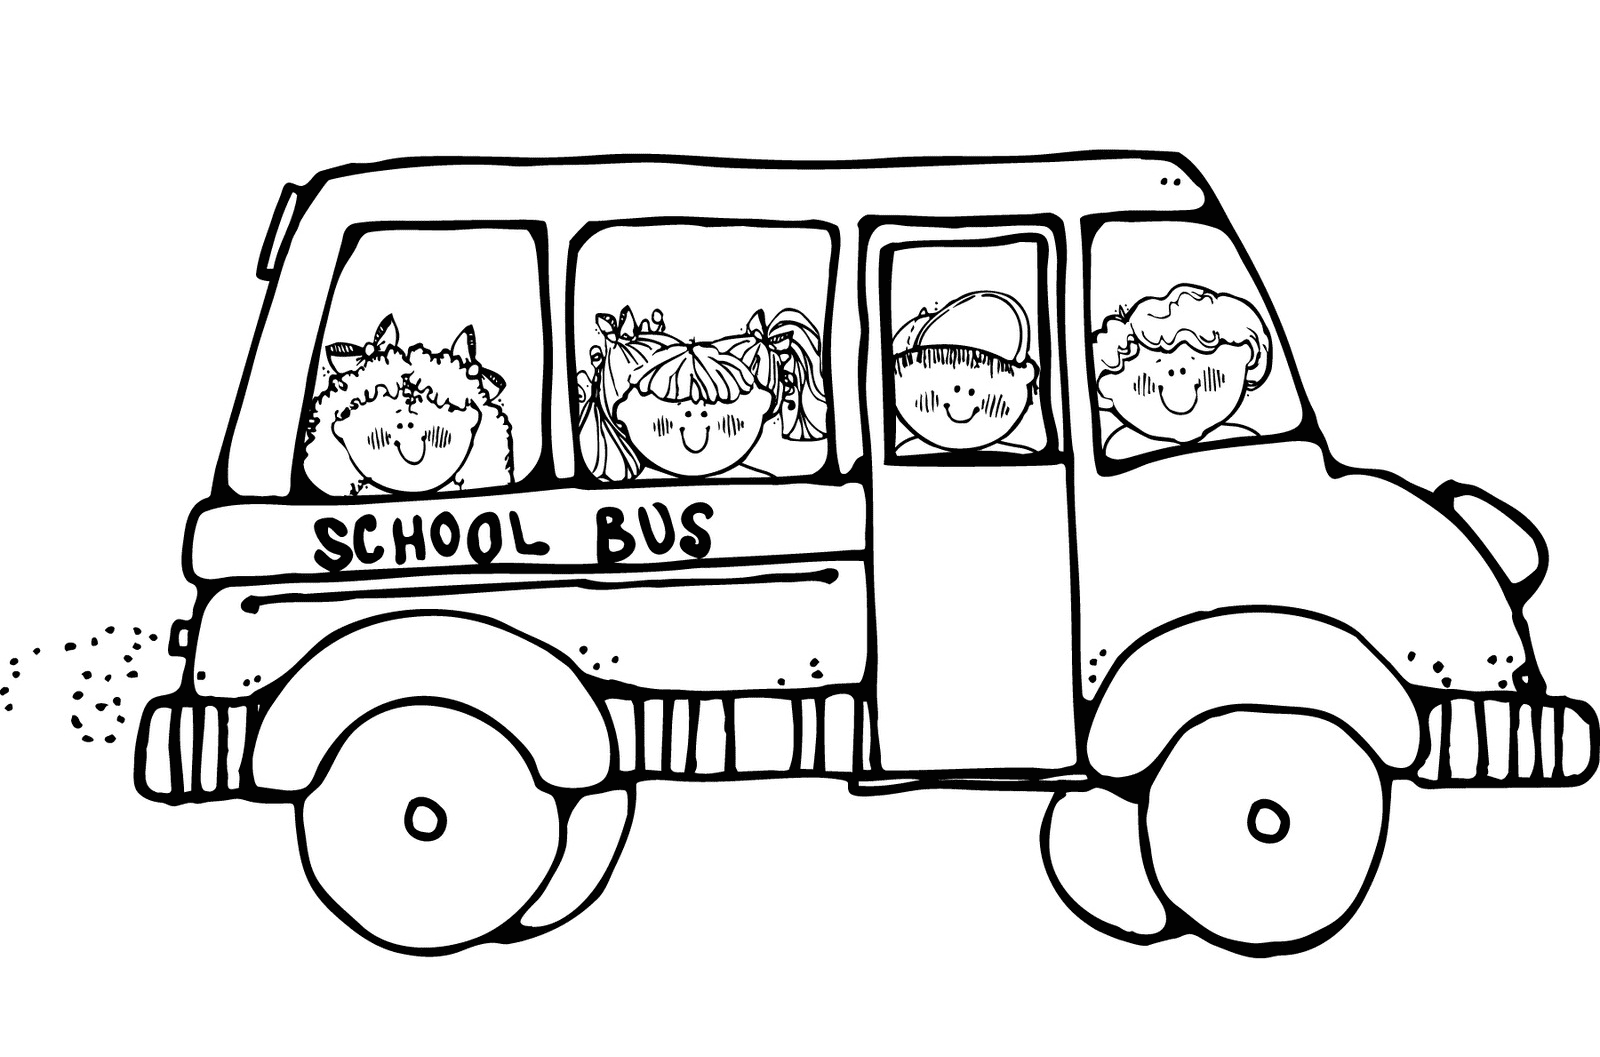 Autobus scolaire mignon avec des enfants heureux du bus scolaire